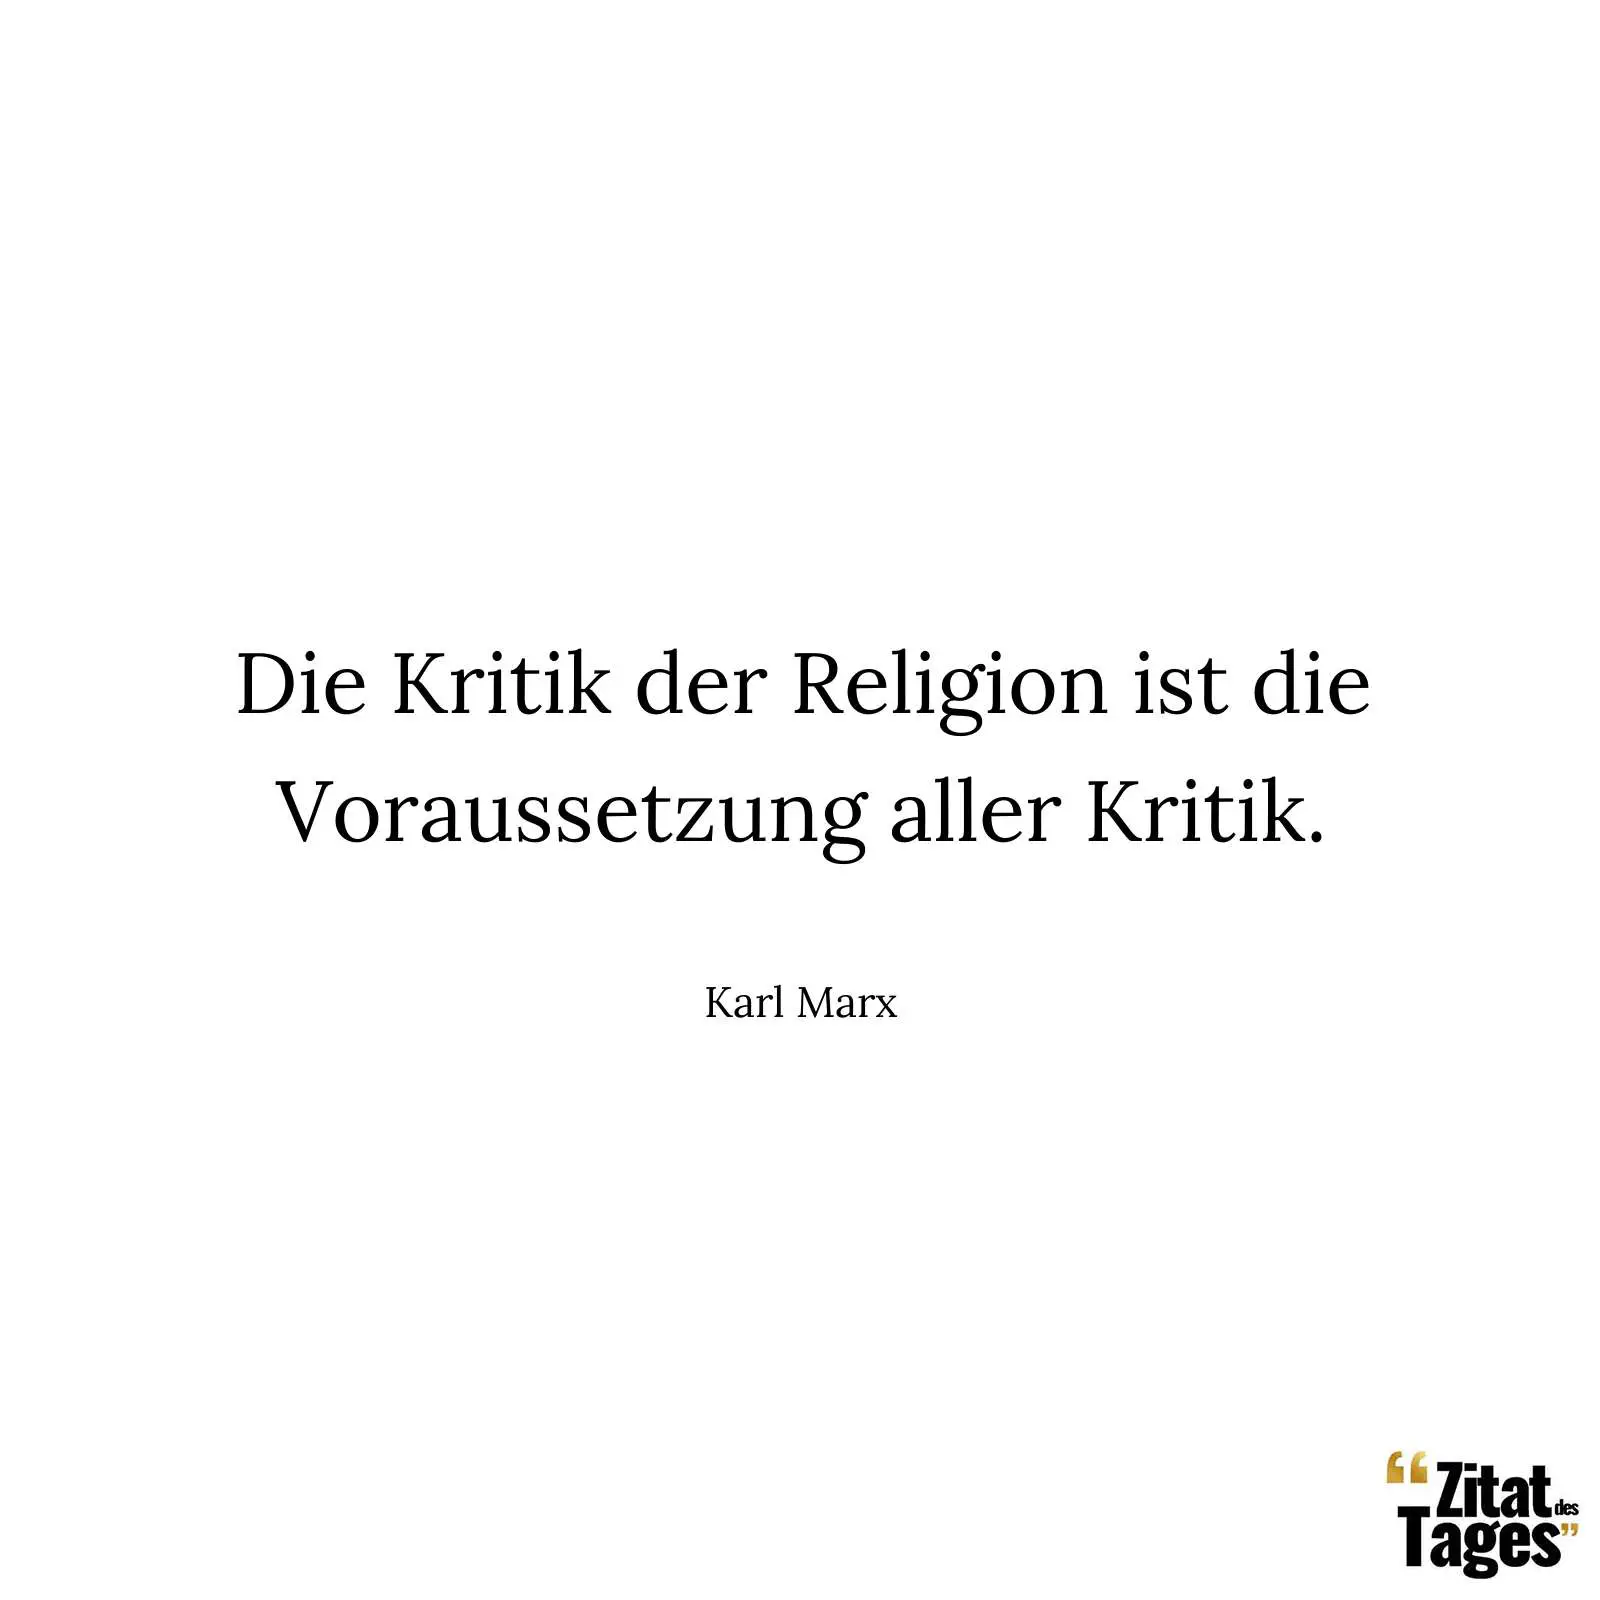 Die Kritik der Religion ist die Voraussetzung aller Kritik. - Karl Marx